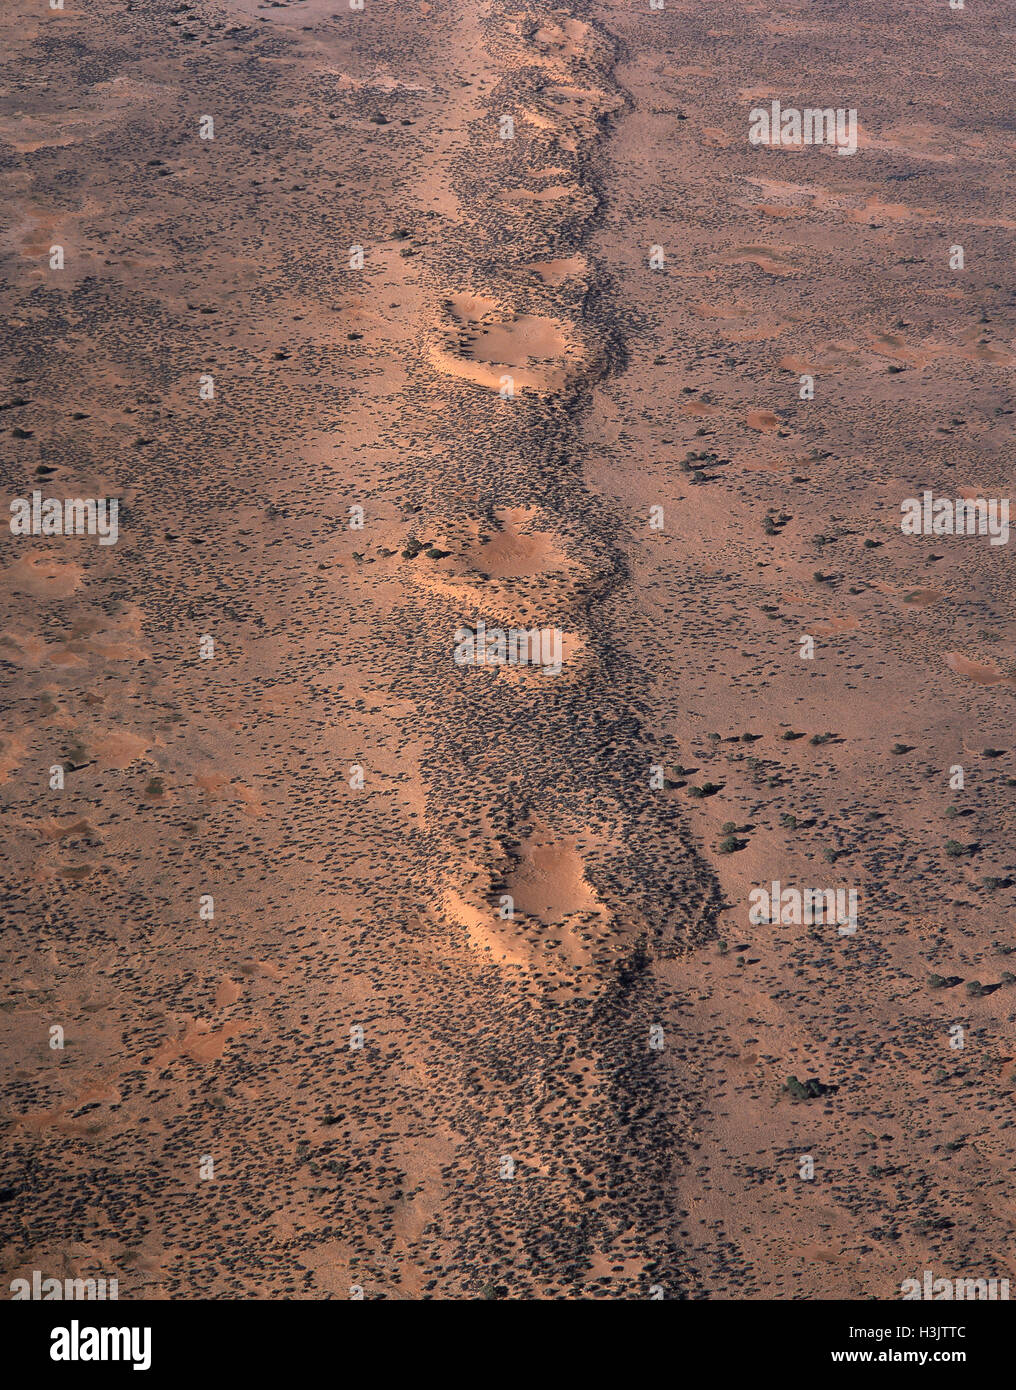 Fotografia aerea di dune di sabbia del deserto, Foto Stock